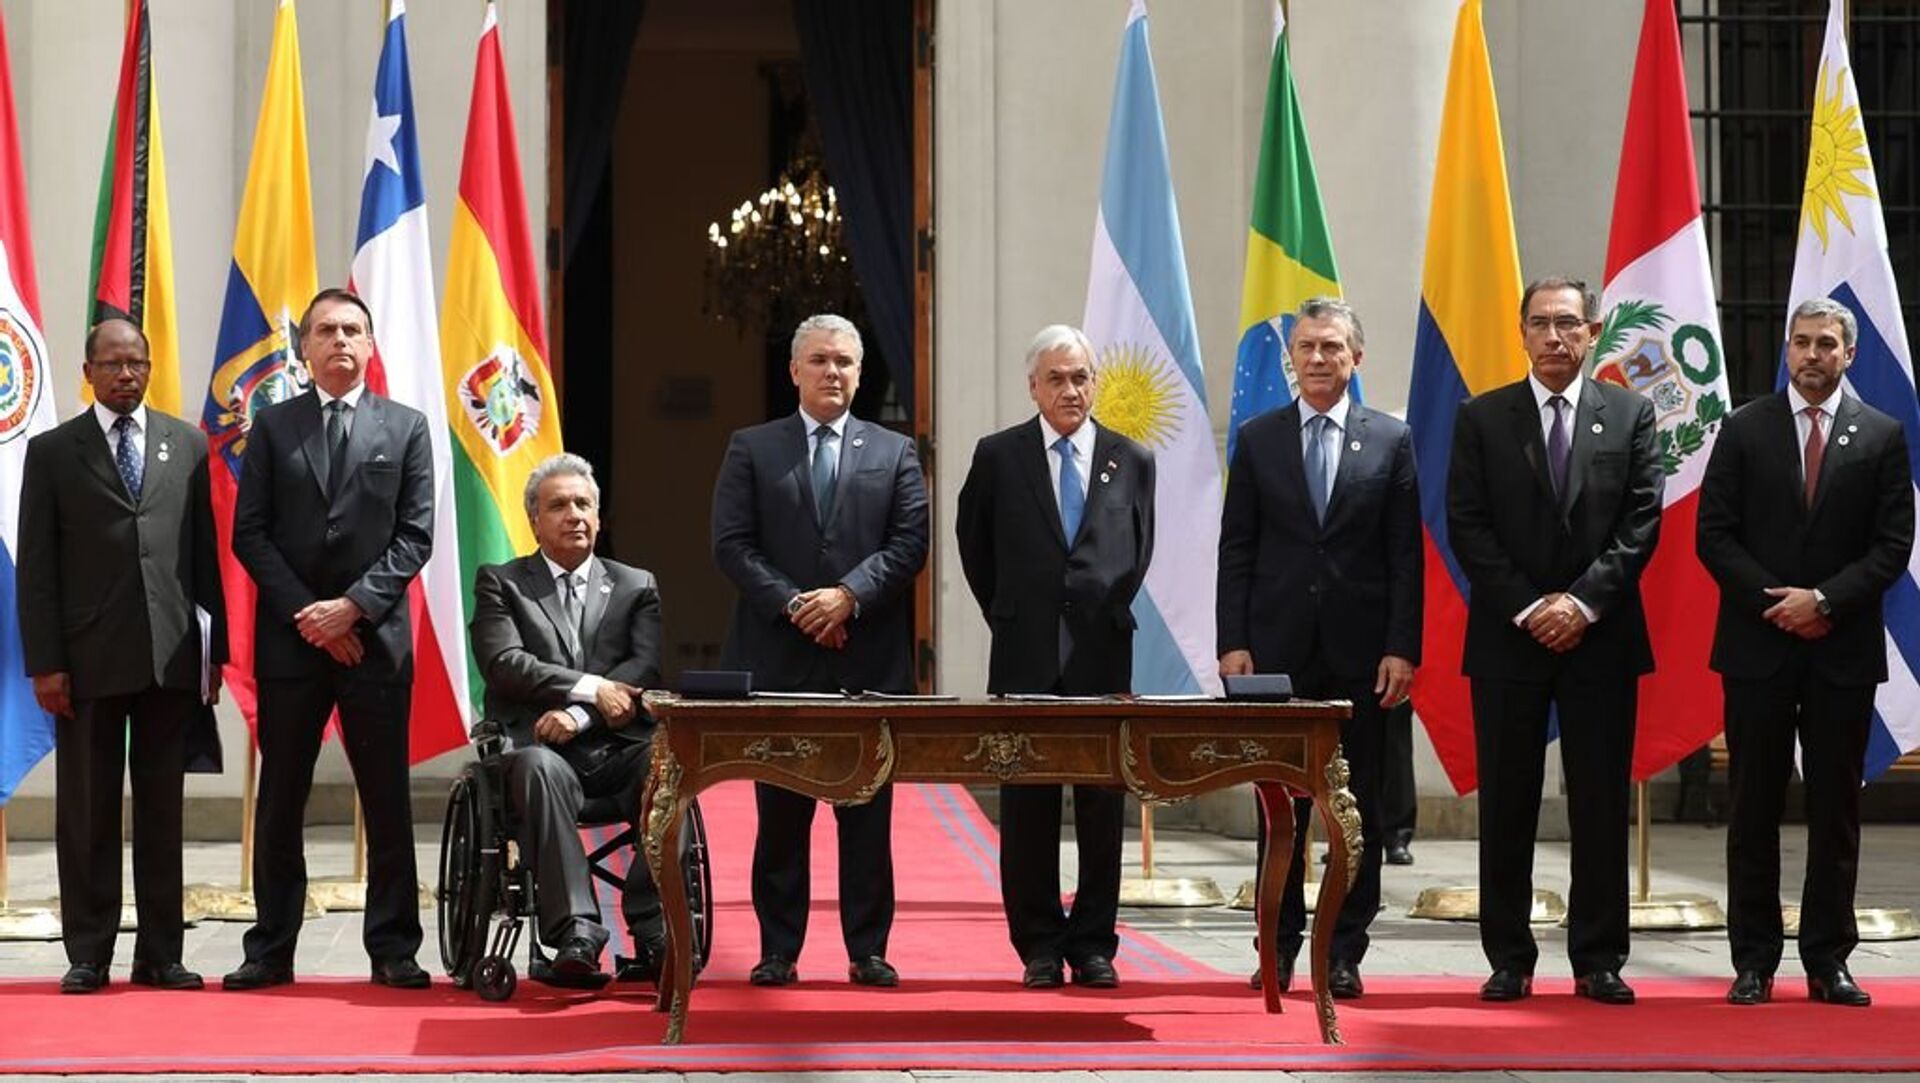 O presidente do Brasil, Jair Bolsonaro, e mais 6 presidentes sul-americanos assinam a Declaração de Santiago, que marca o início do processo de criação do Fórum para o Progresso da América do Sul (Prosul). - Sputnik Brasil, 1920, 03.02.2023